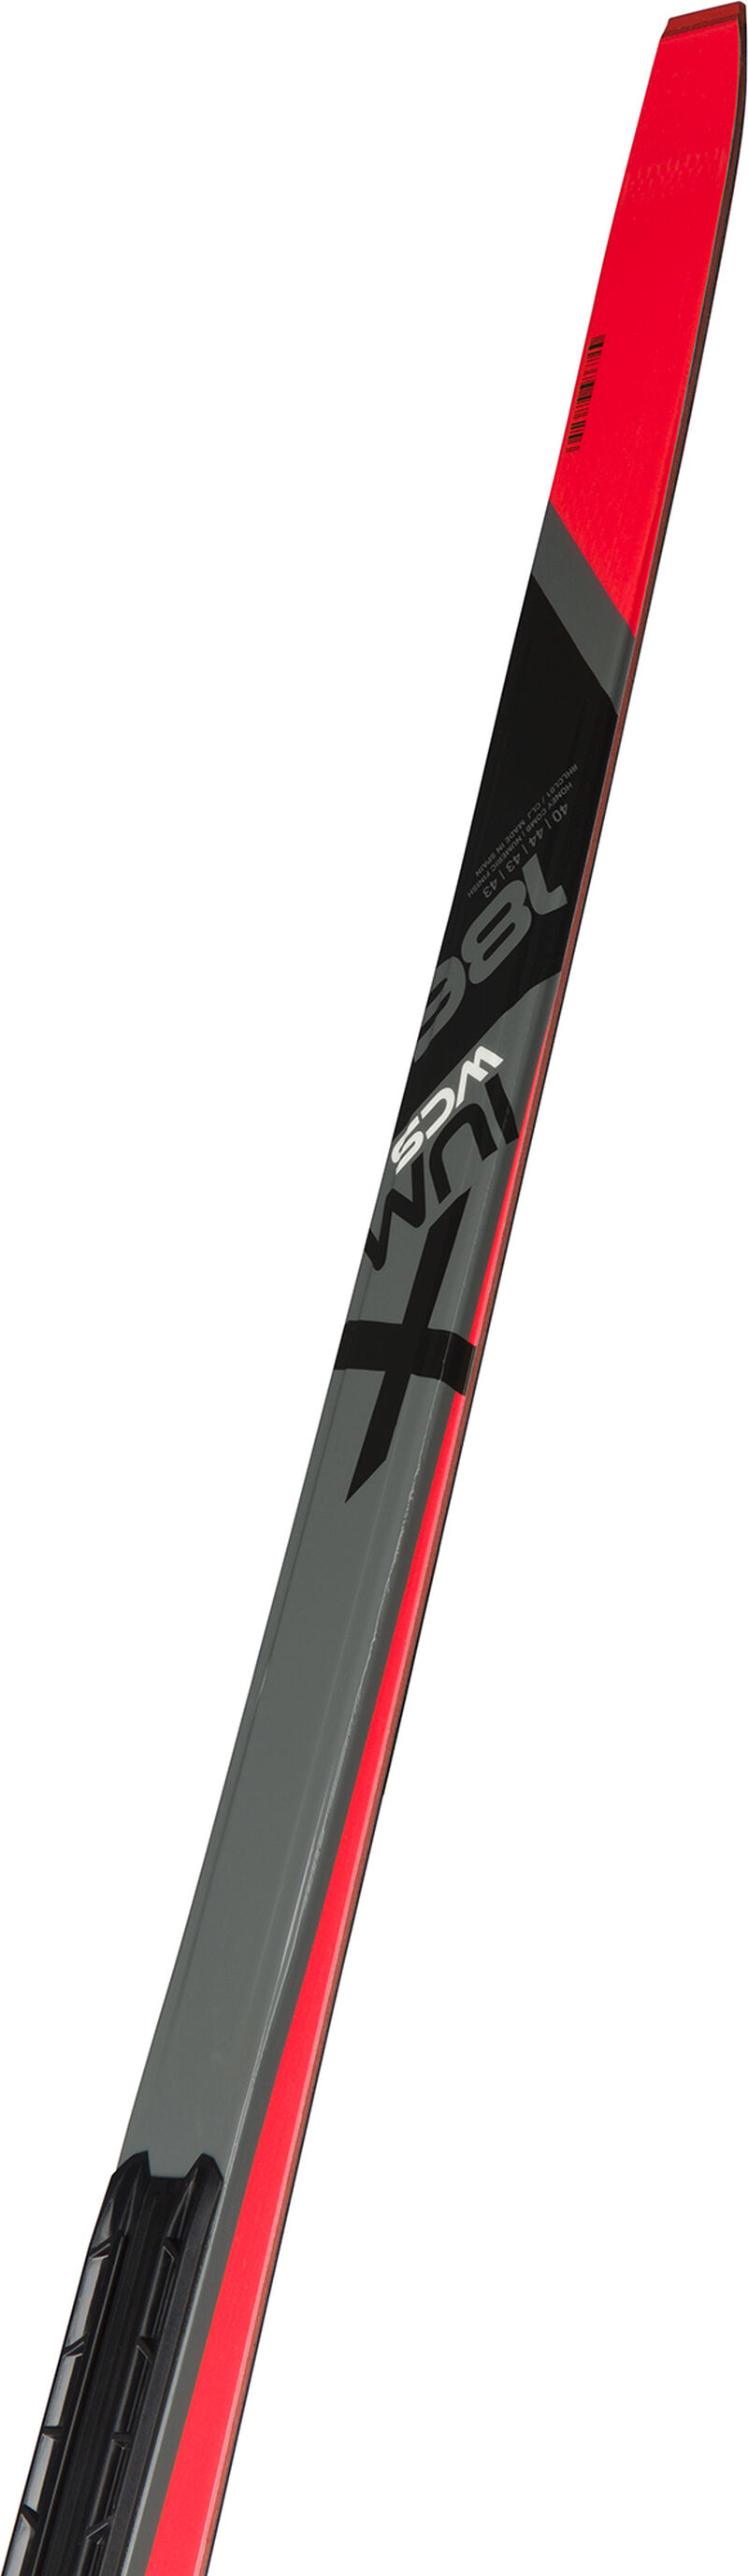 Unisex Nordic Racing Skis X-Ium Skating Wcs-S2 MEDIUM